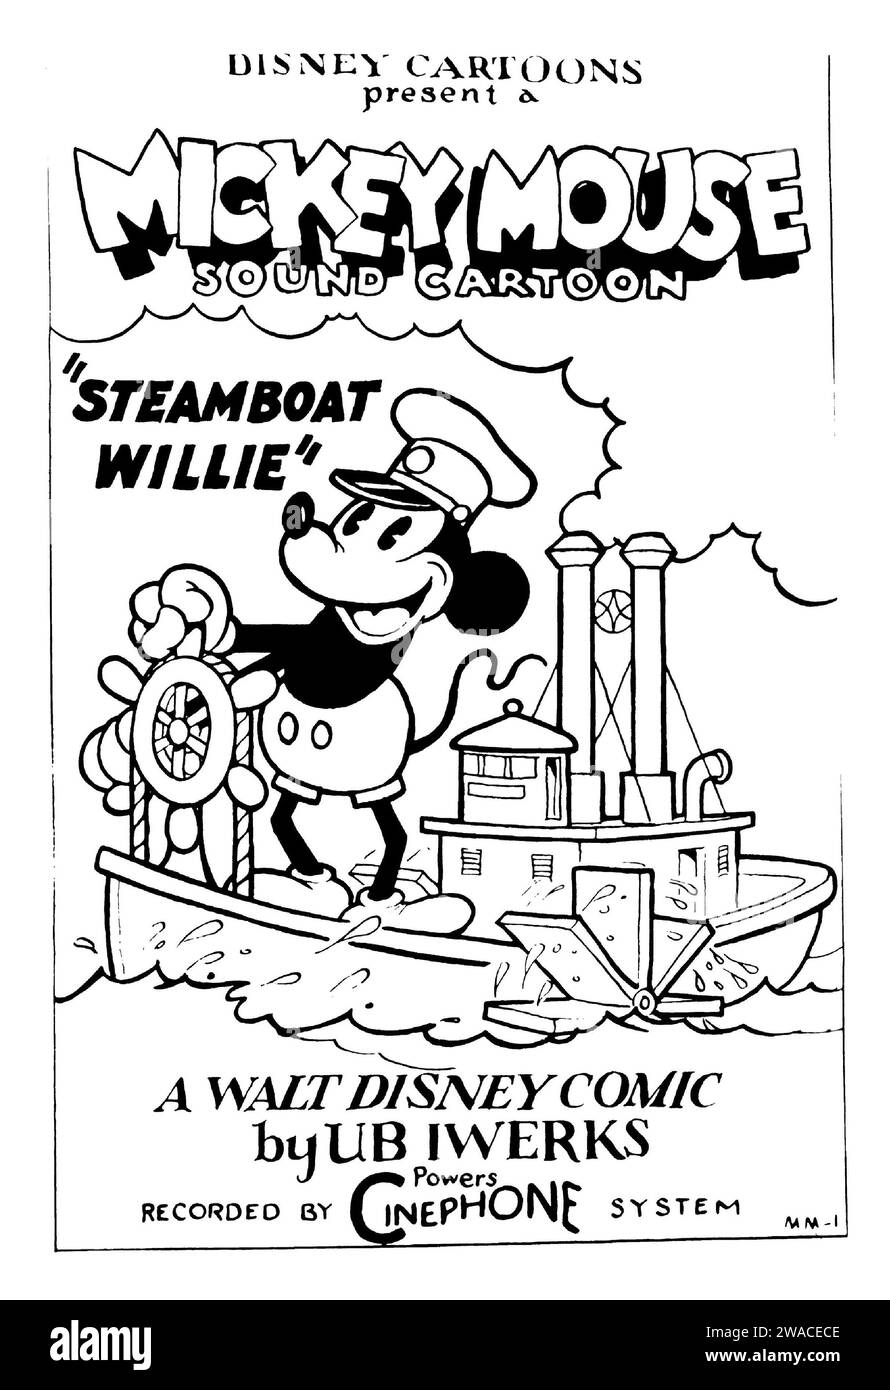 Affiche pour le dessin animé de Mickey Mouse de 1928, Steamboat Willie Banque D'Images